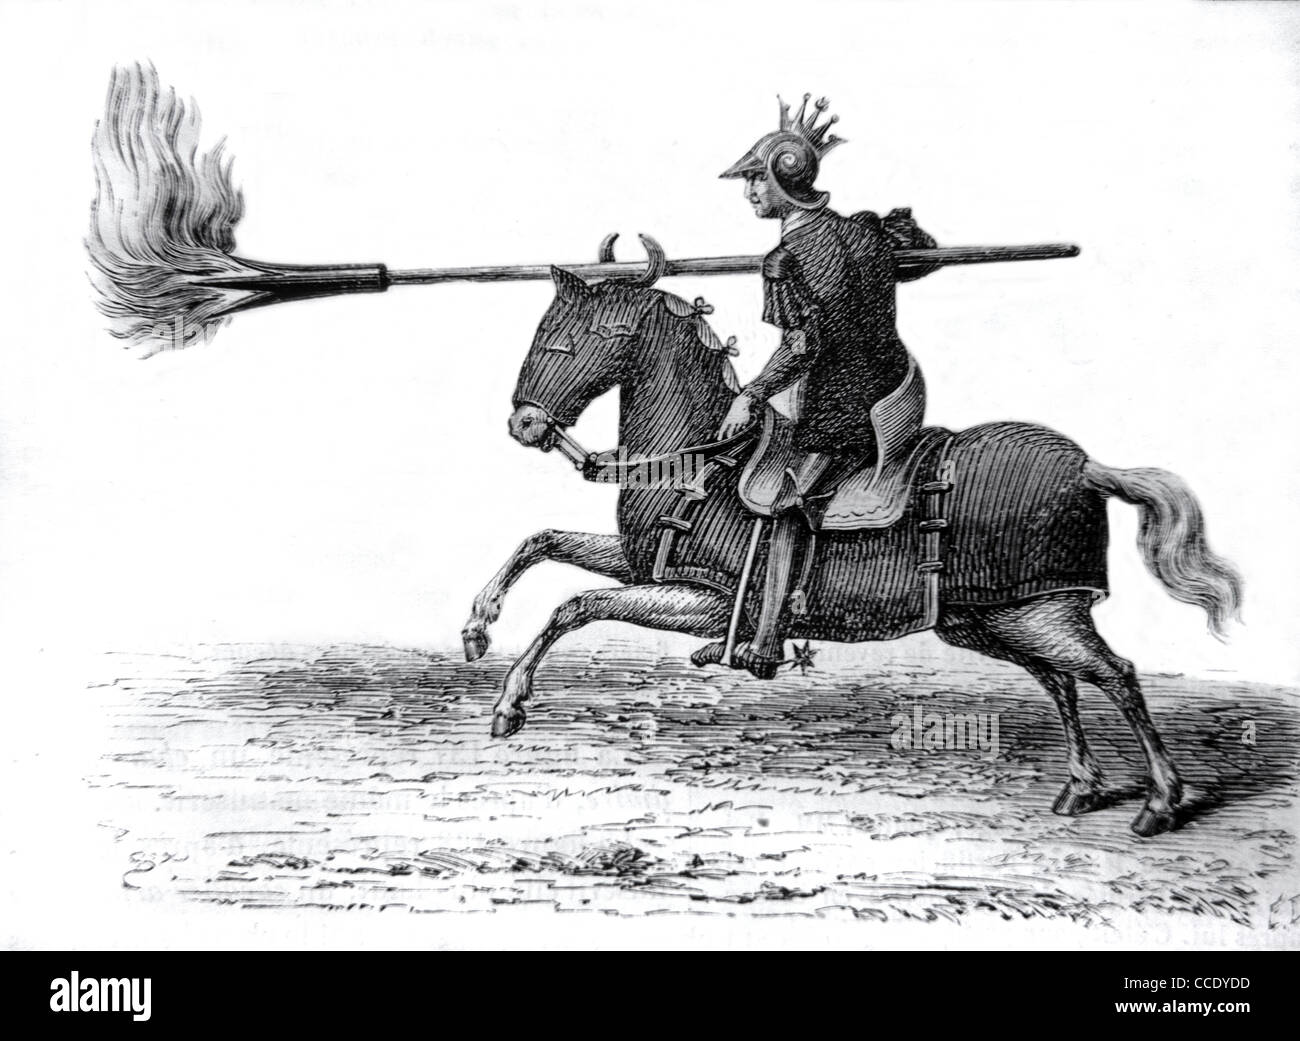 Cavaliere medievale, Cavalleria, Cavaliere o Soldato montato con lancia flamante o Spear, c19 incisione o illustrazione d'epoca Foto Stock